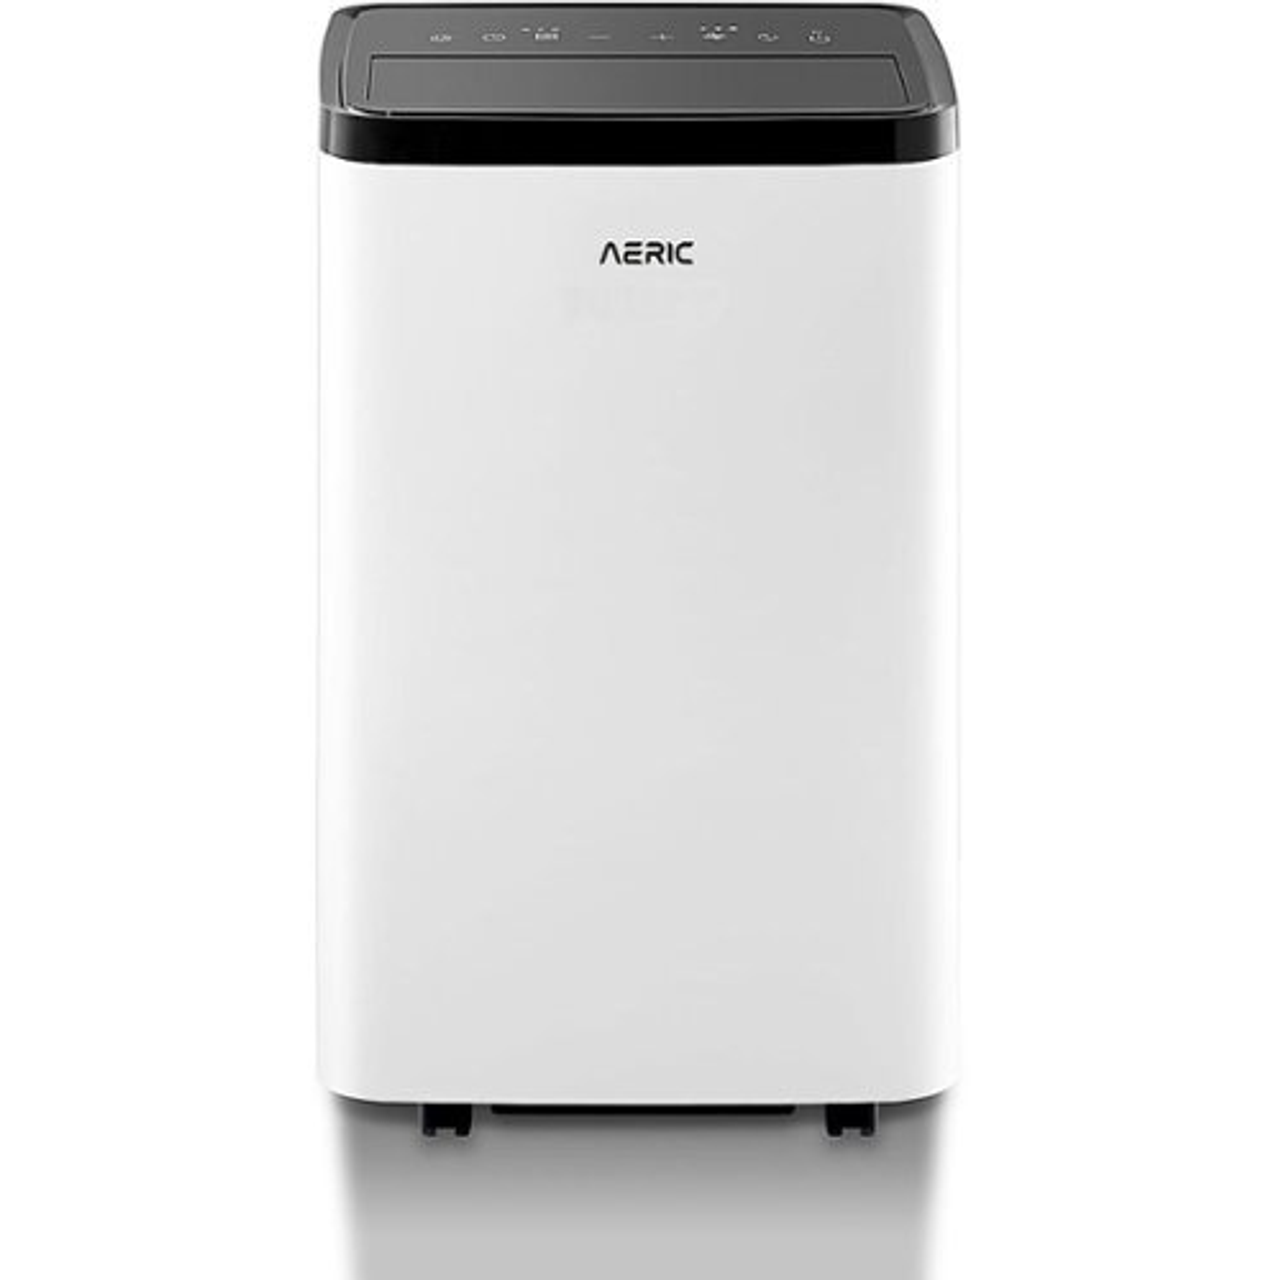 Aeric - 8,000 BTU Portable Air Conditioner - White